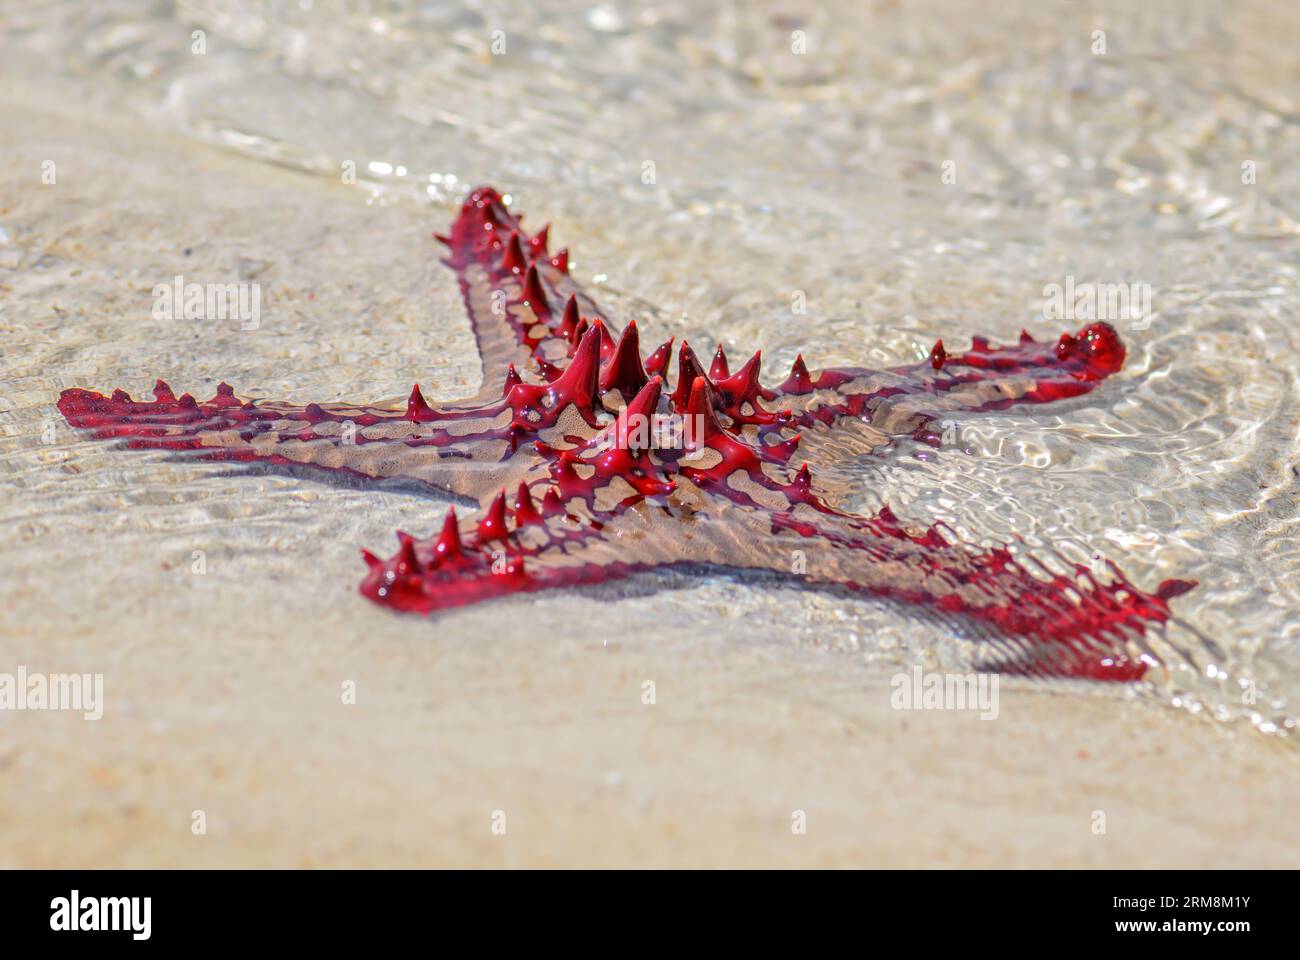 Red Button Sea Star - Protoreaster lincki, wunderschöne große farbige Seesterne von indischen ozischen Küsten und Riffen, Sansibar. Stockfoto